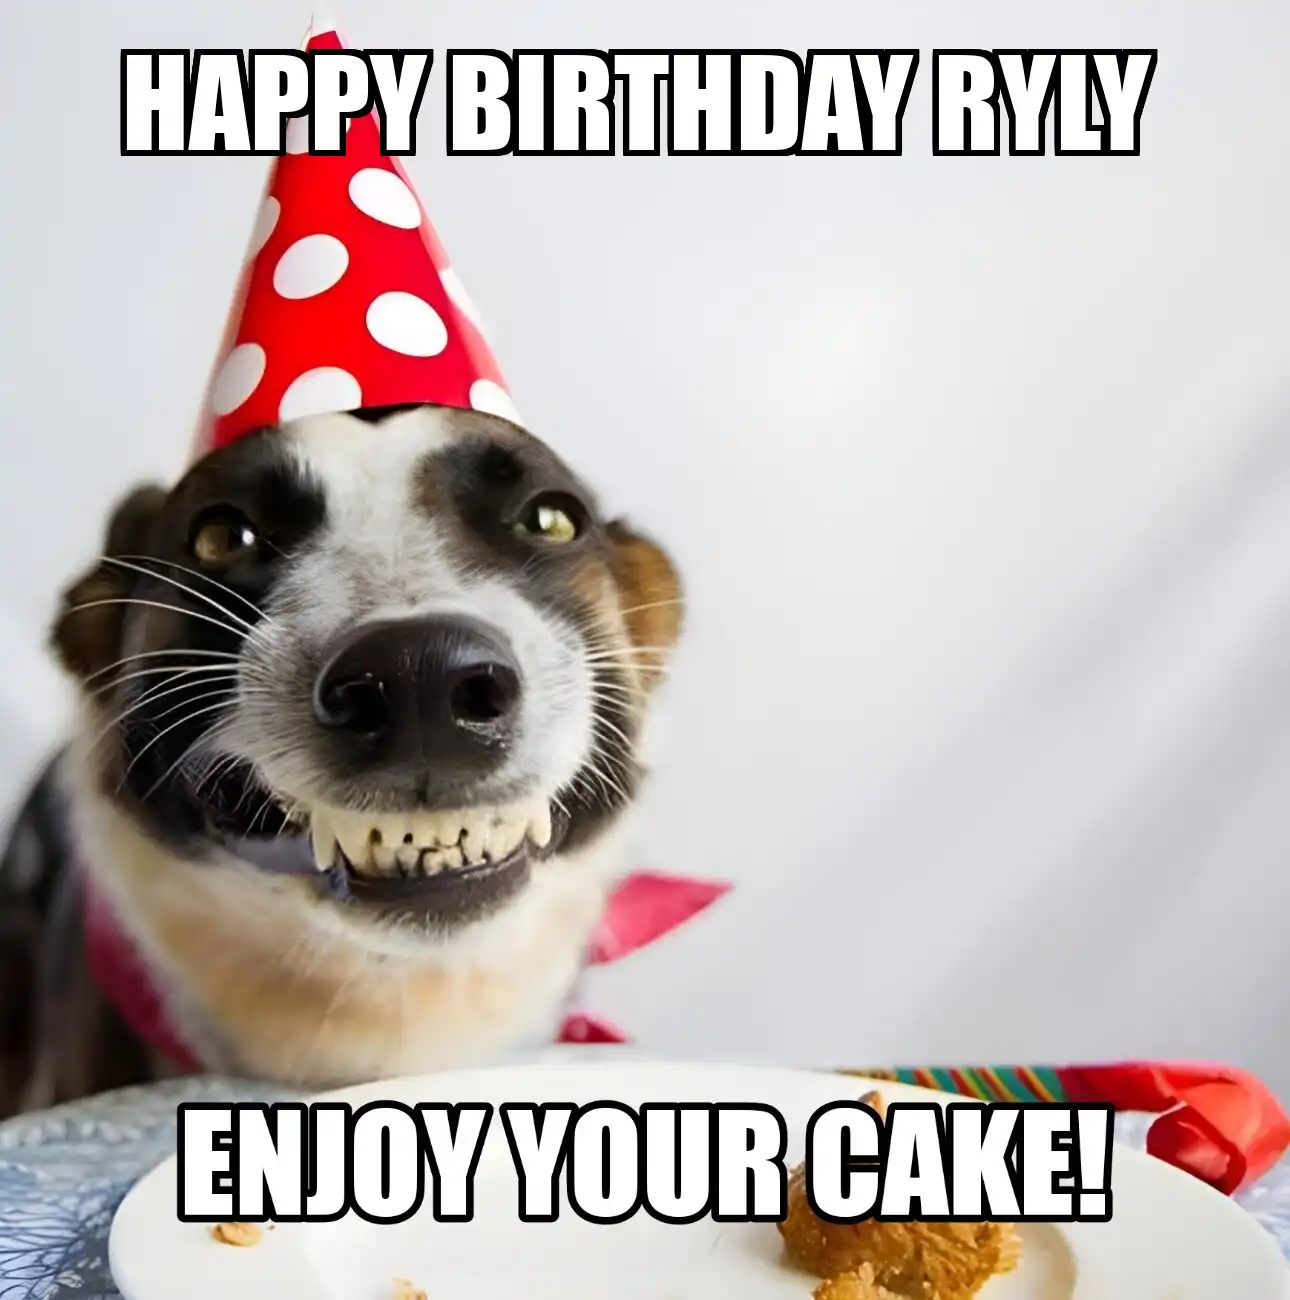 Happy Birthday Ryly Enjoy Your Cake Dog Meme